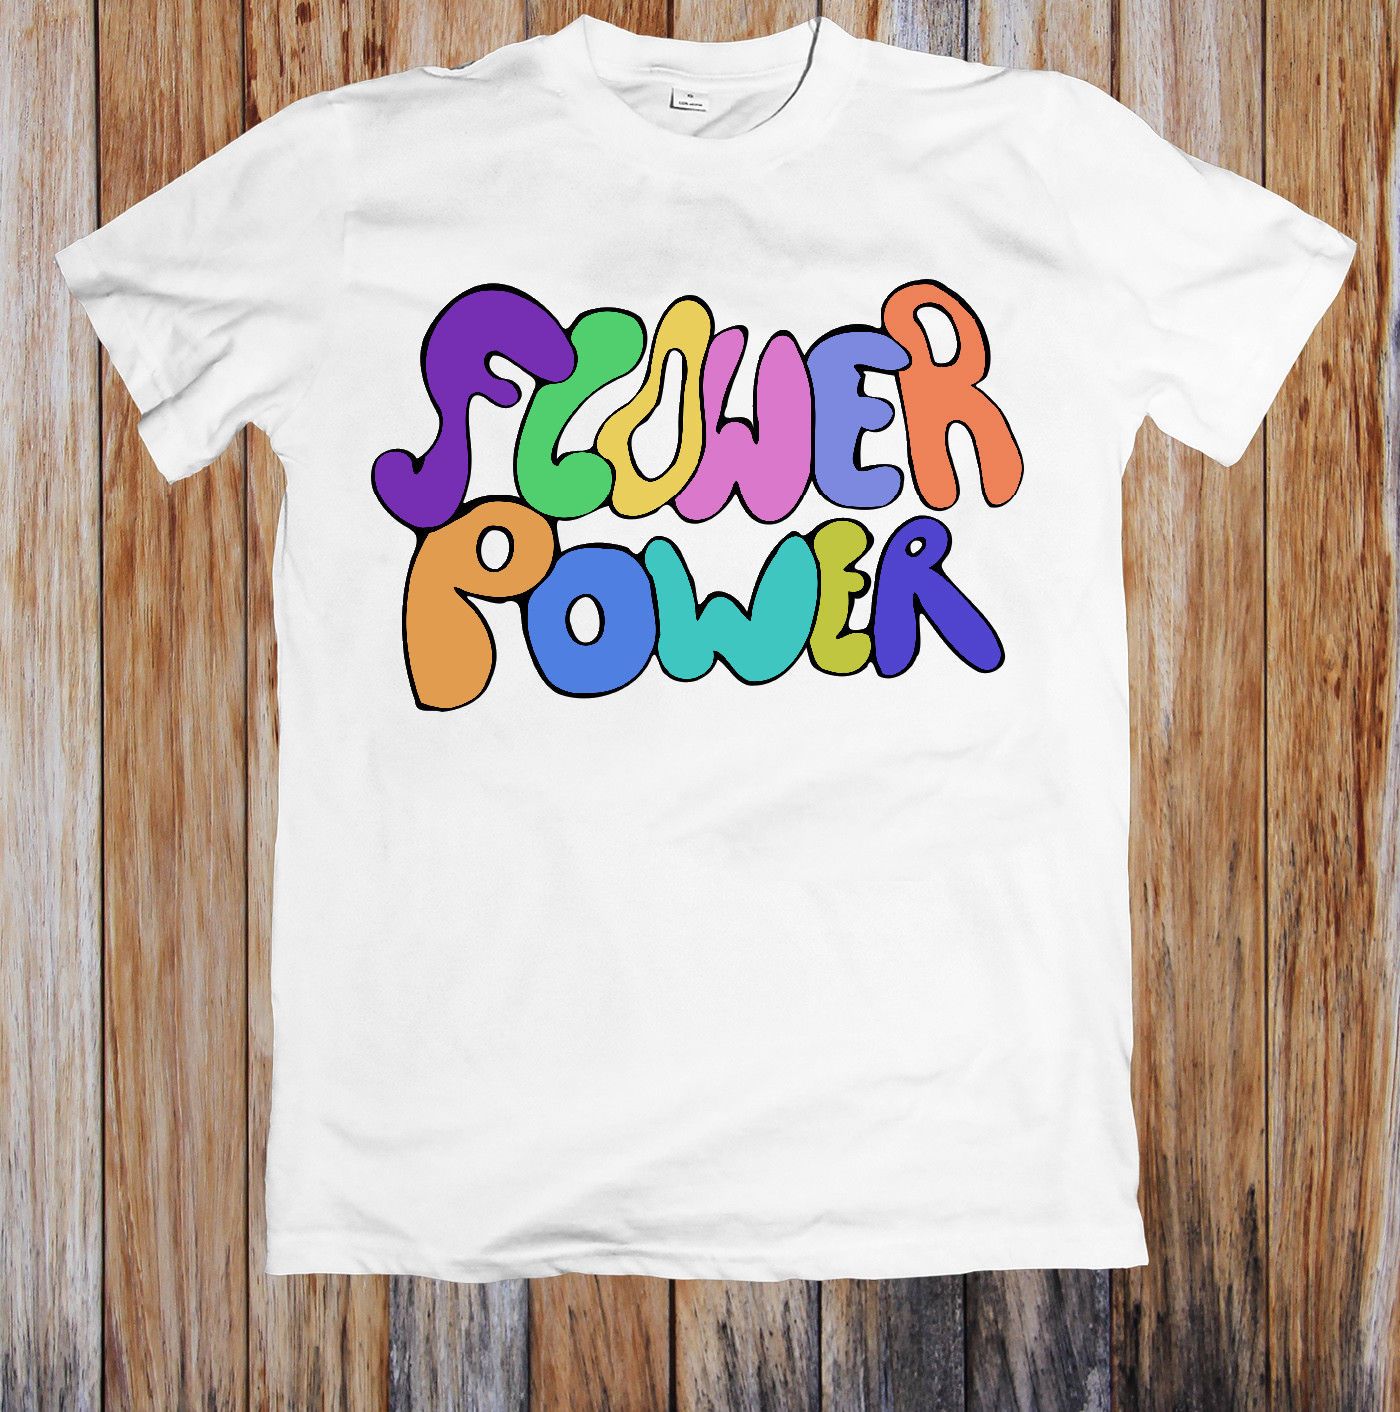 Flower Power Shirt - Flowers Power Photos